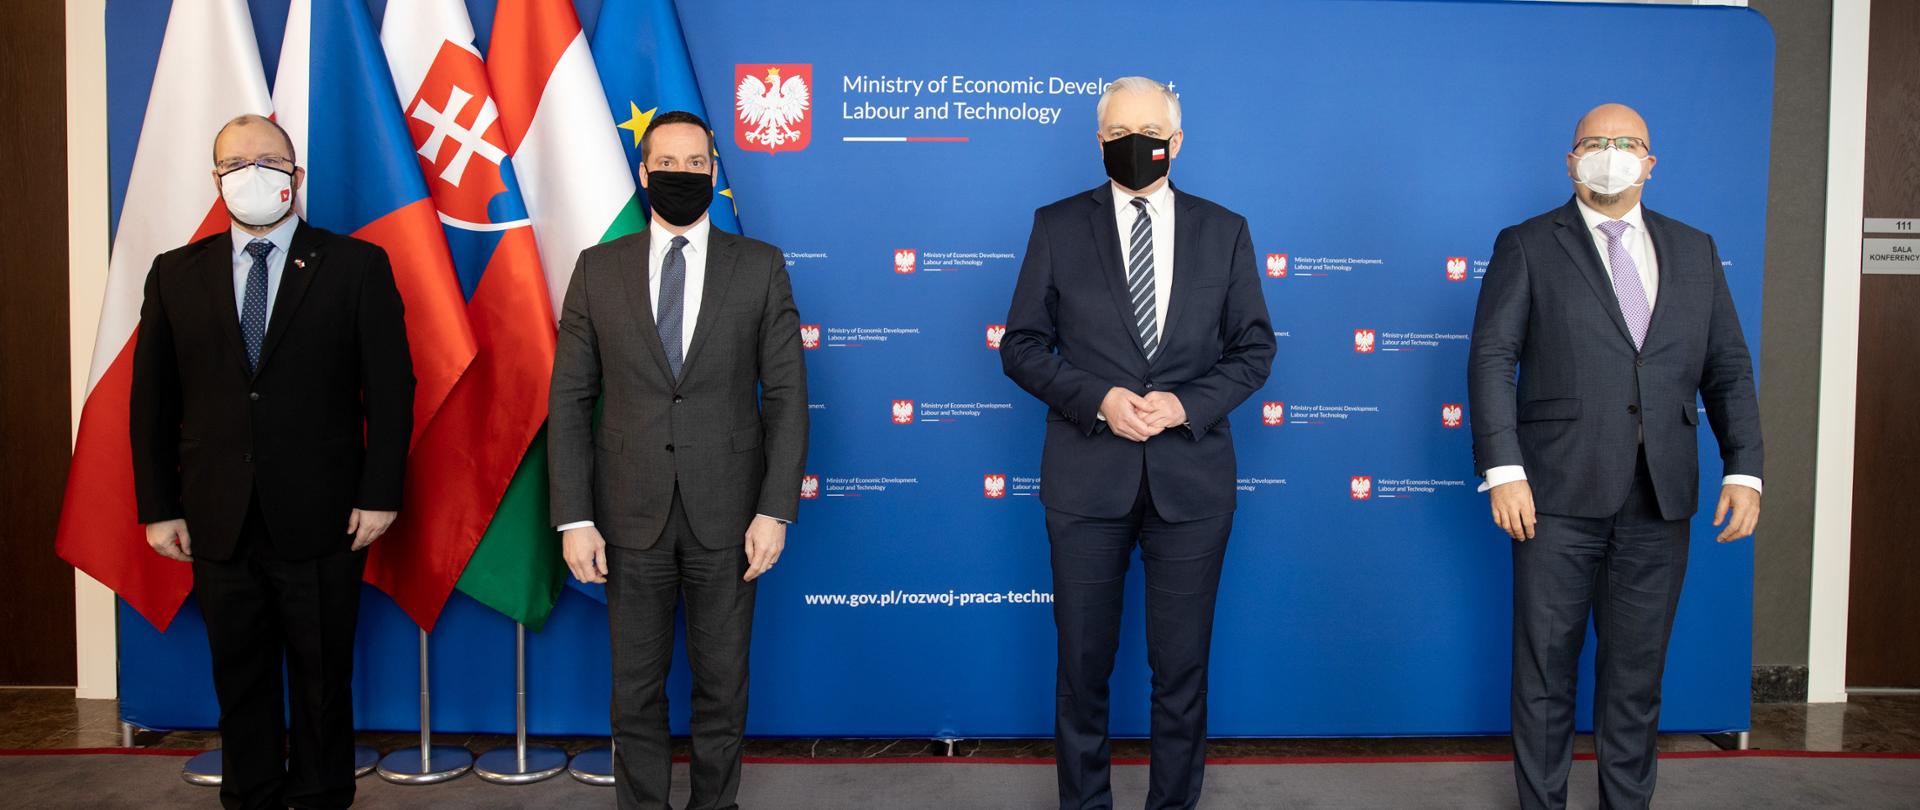 Premier Gowin z Ambasadorami Grupy Wyszehradzkiej na tle ścianki ministerstwa i flag czterech krajów.